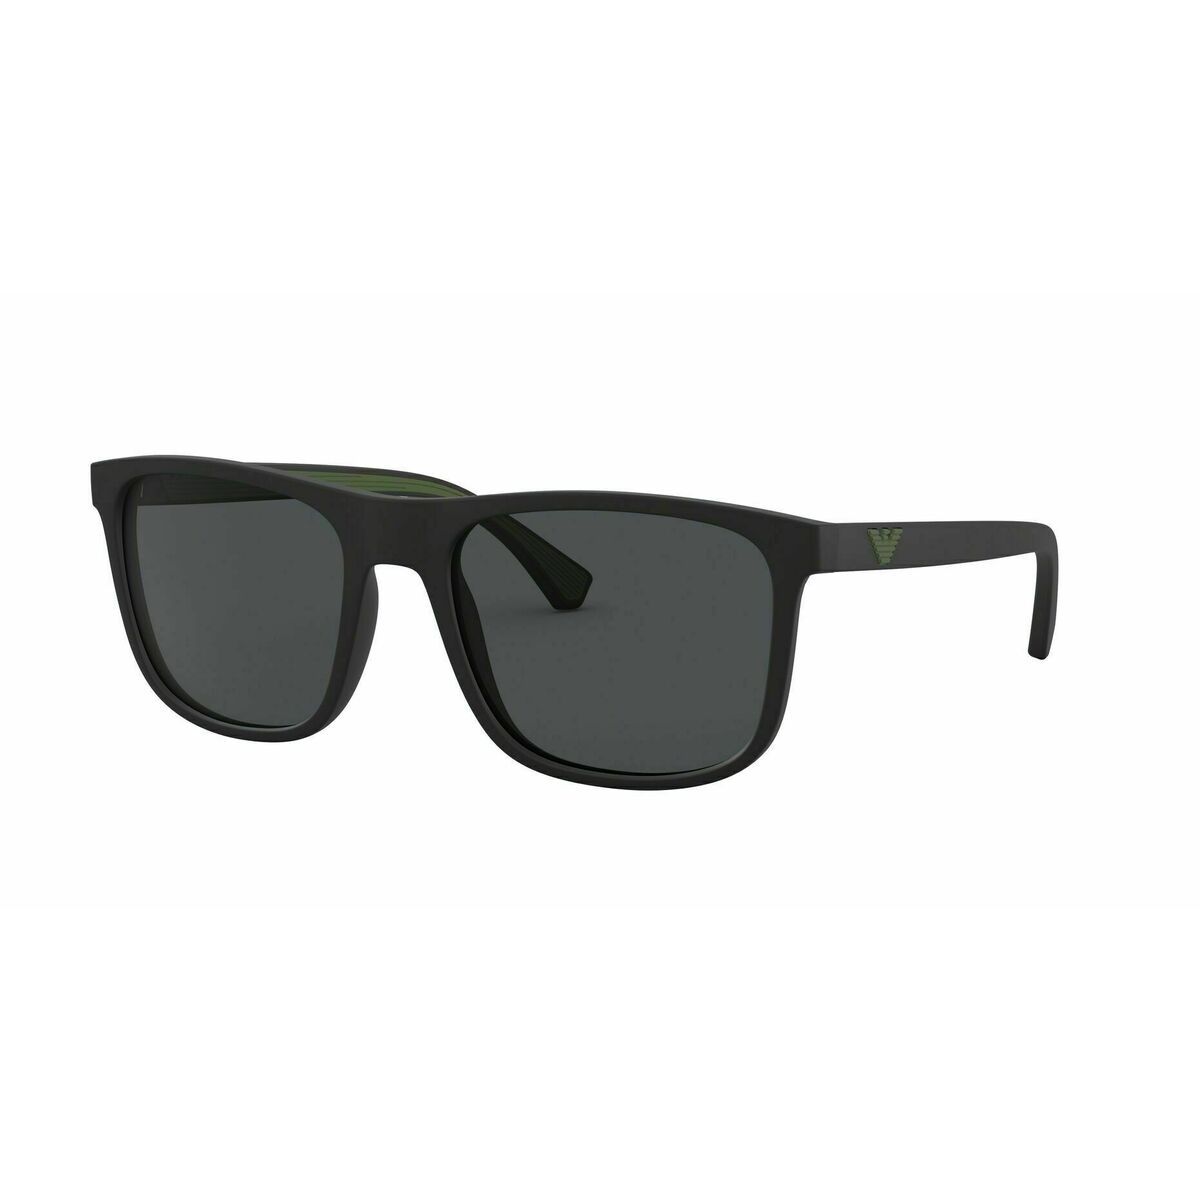 EA4129 Square Sunglasses 5042 87 - size 56